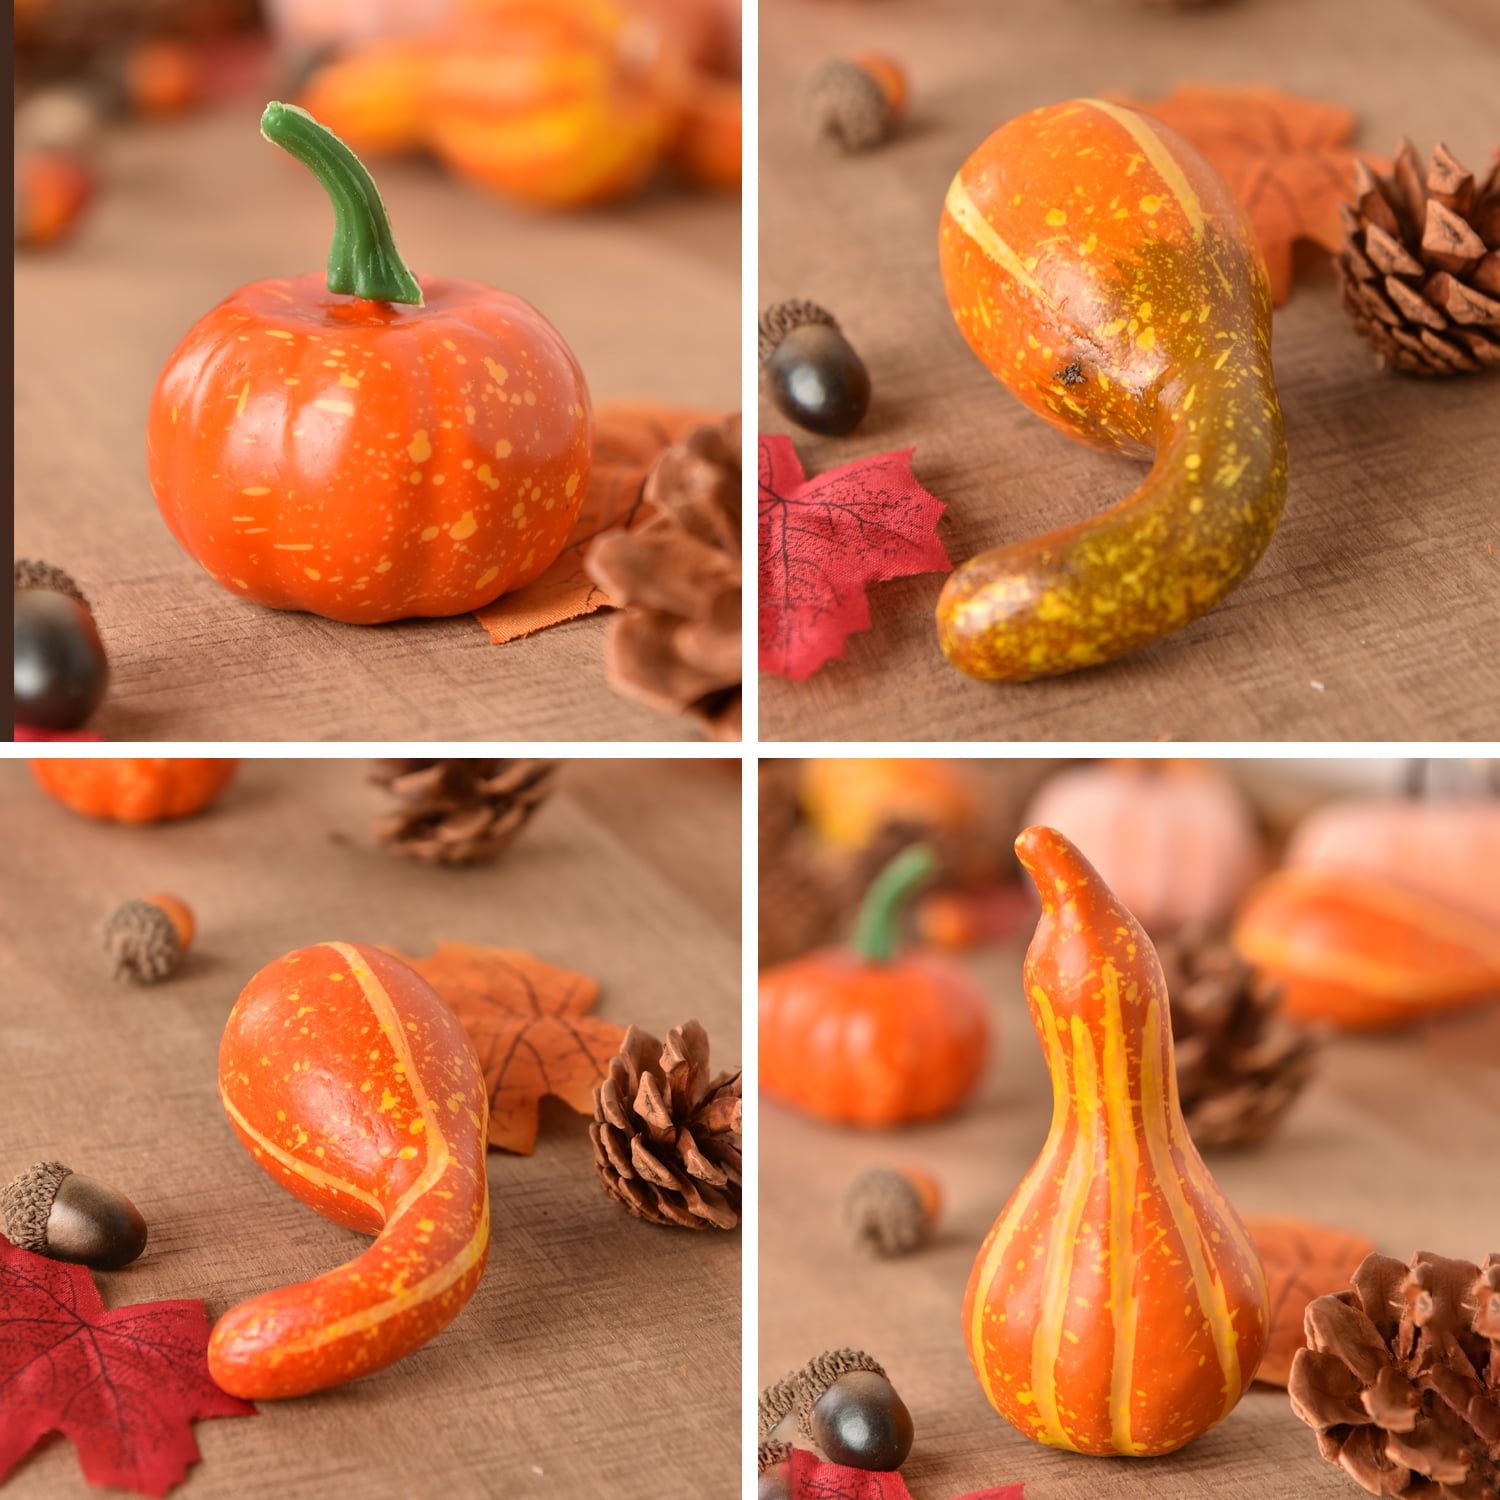 Bulk 166 Pcs Artificial Pumpkins Acorns Maples Pinecones for Decoratin —  Artificialmerch